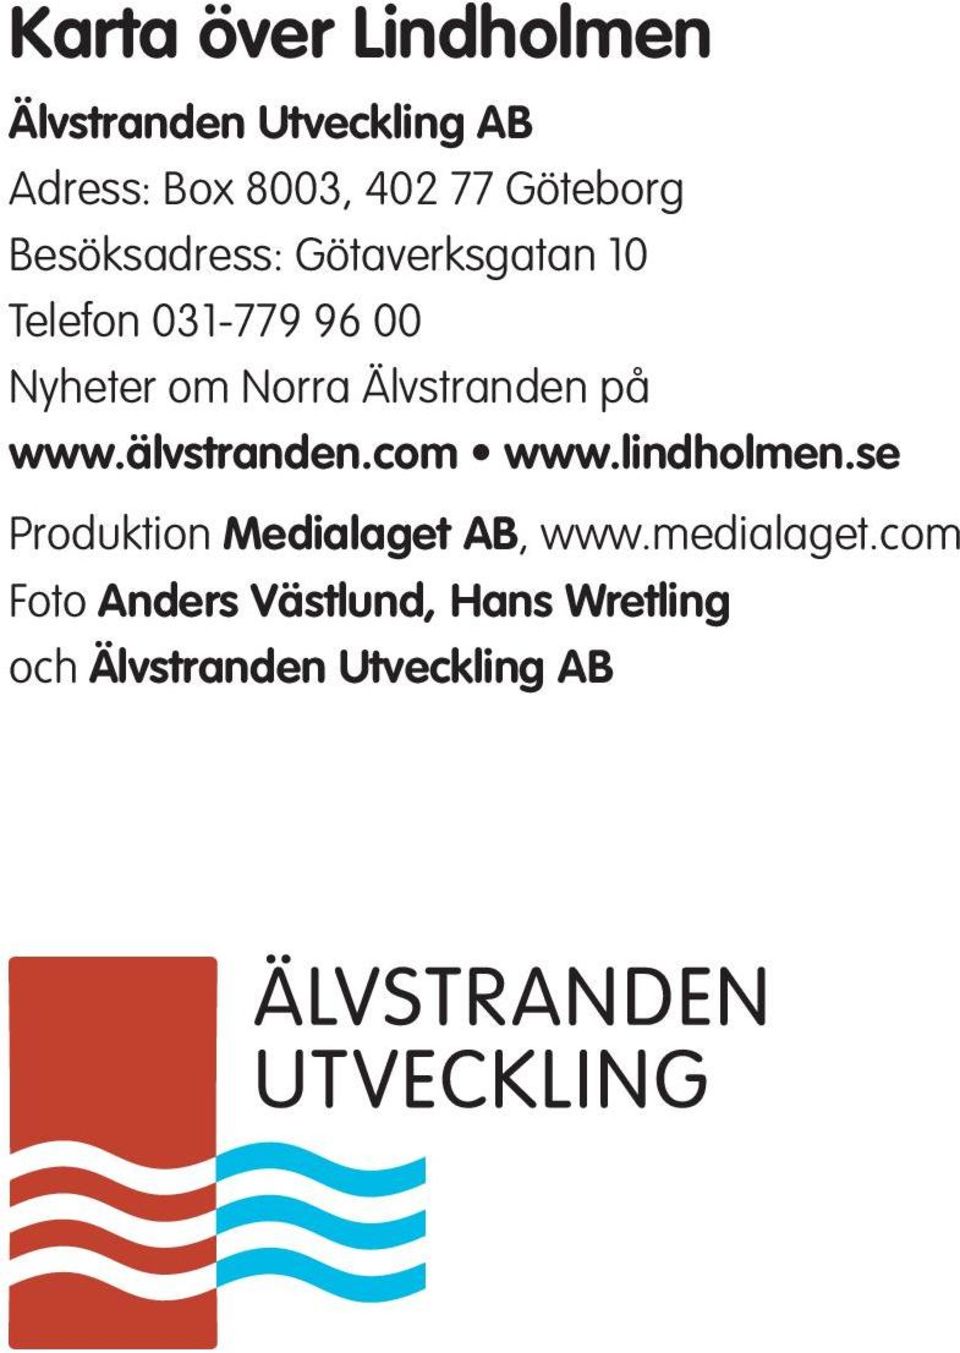 på www.älvstranden.com www.lindholmen.se roduktion Medialaget AB, www.